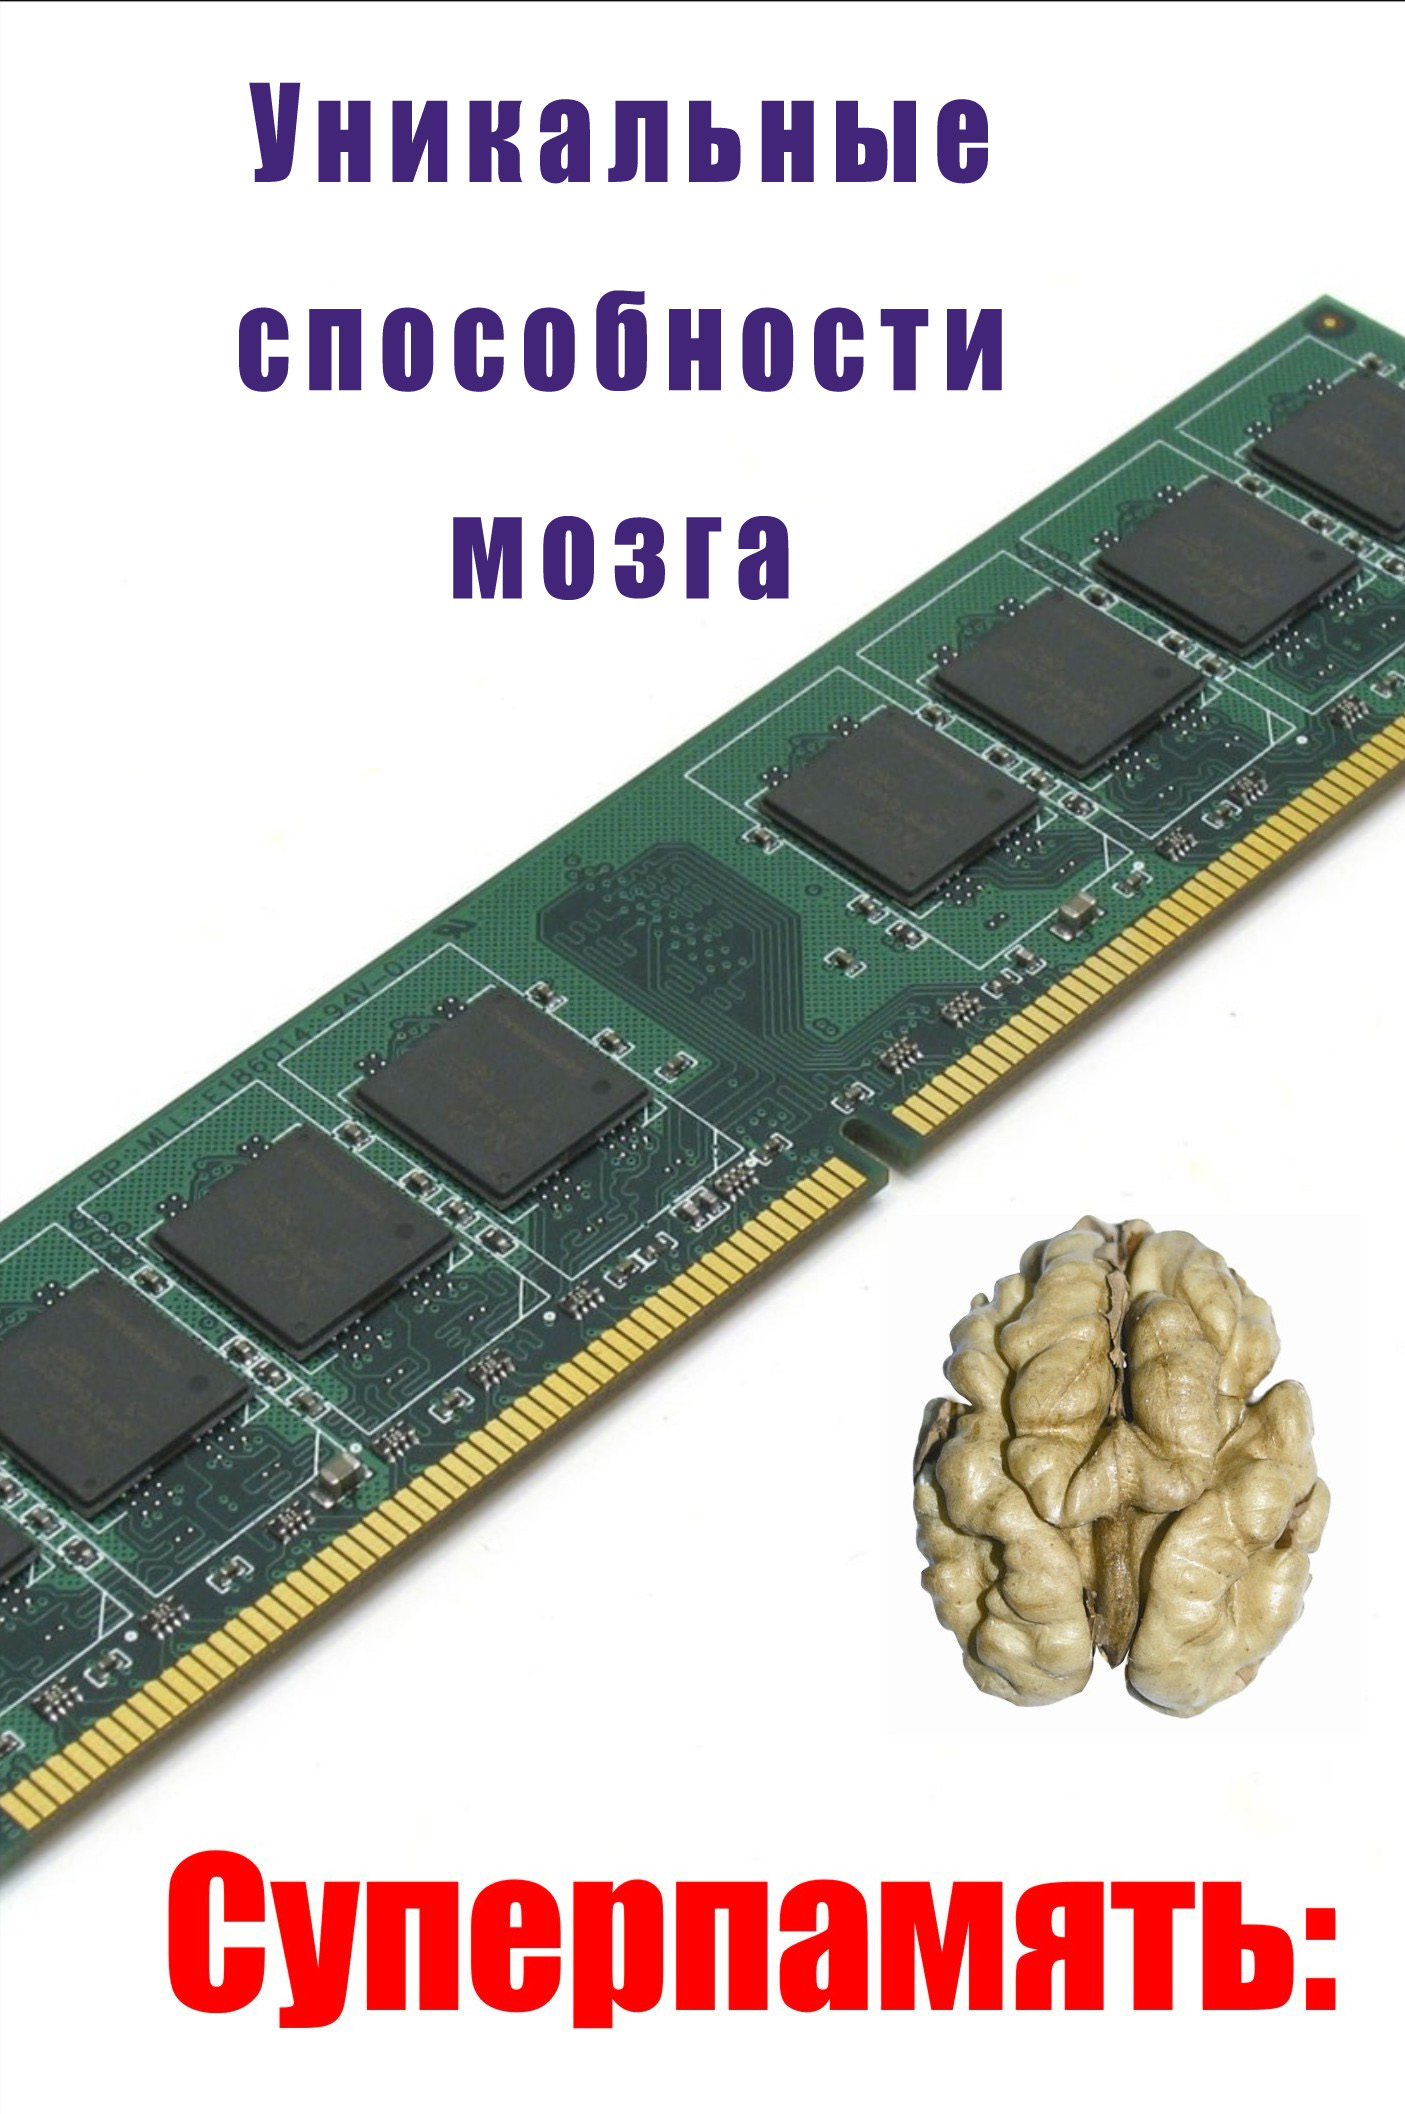 Книга Уникальные способности мозга из серии , созданная Илья Мельников, может относится к жанру Личностный рост. Стоимость электронной книги Уникальные способности мозга с идентификатором 6057361 составляет 29.95 руб.